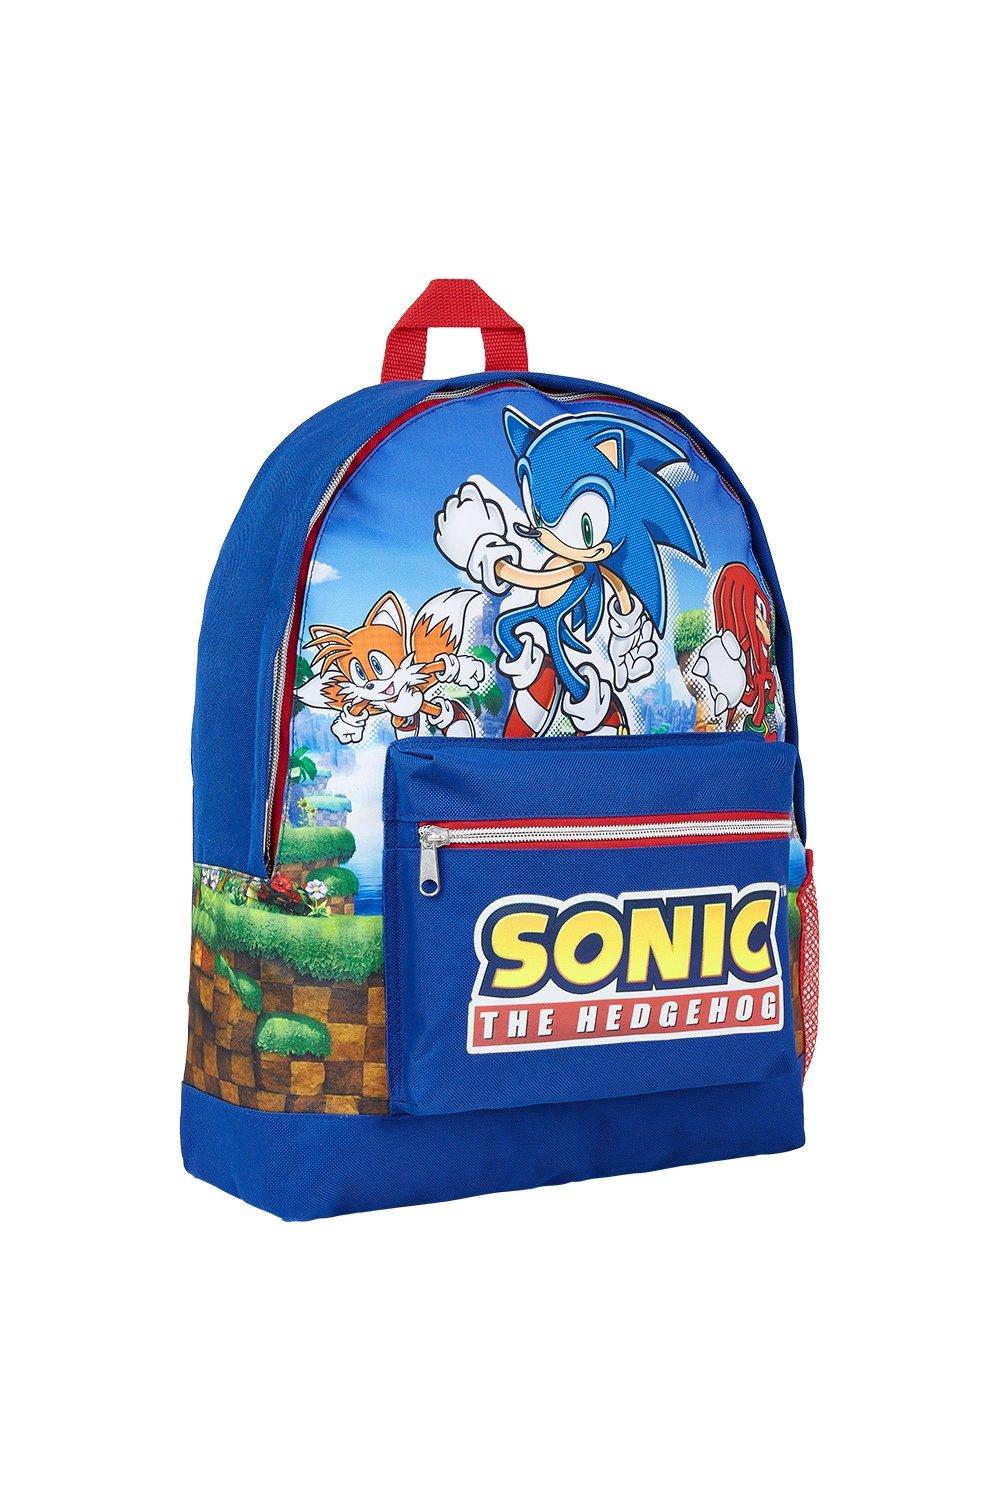 Рюкзак большой емкости Sonic the Hedgehog, синий детские плюшевые рюкзаки vaschy с 3d рисунком из мультфильма детский рюкзак для малышей школьная сумка для детского сада рюкзак для девочек и